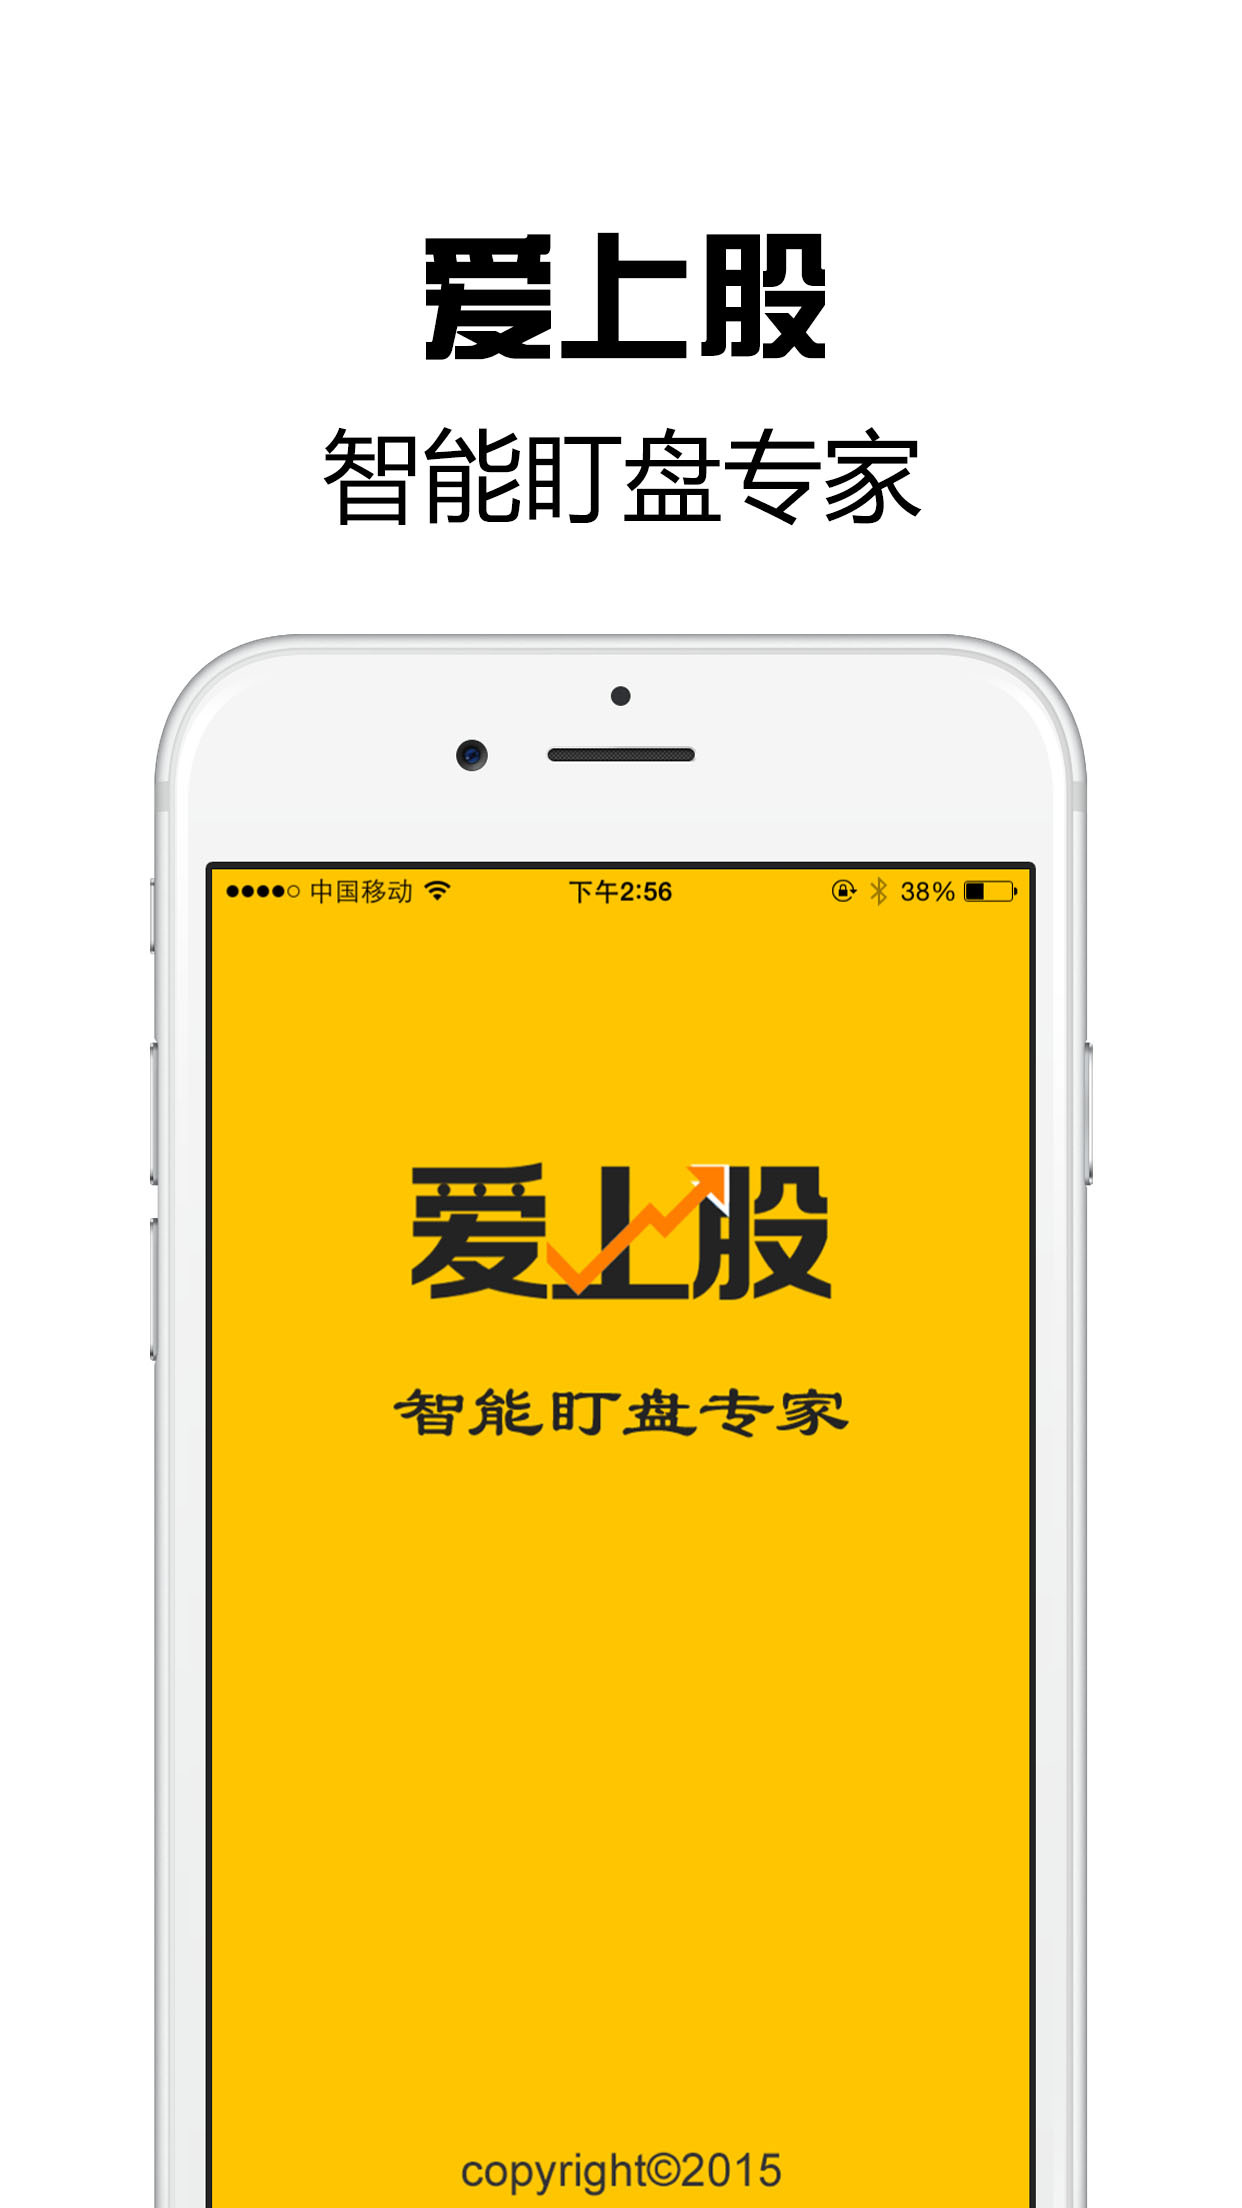 博牛宝沪深策略app官方手机版下载图片1